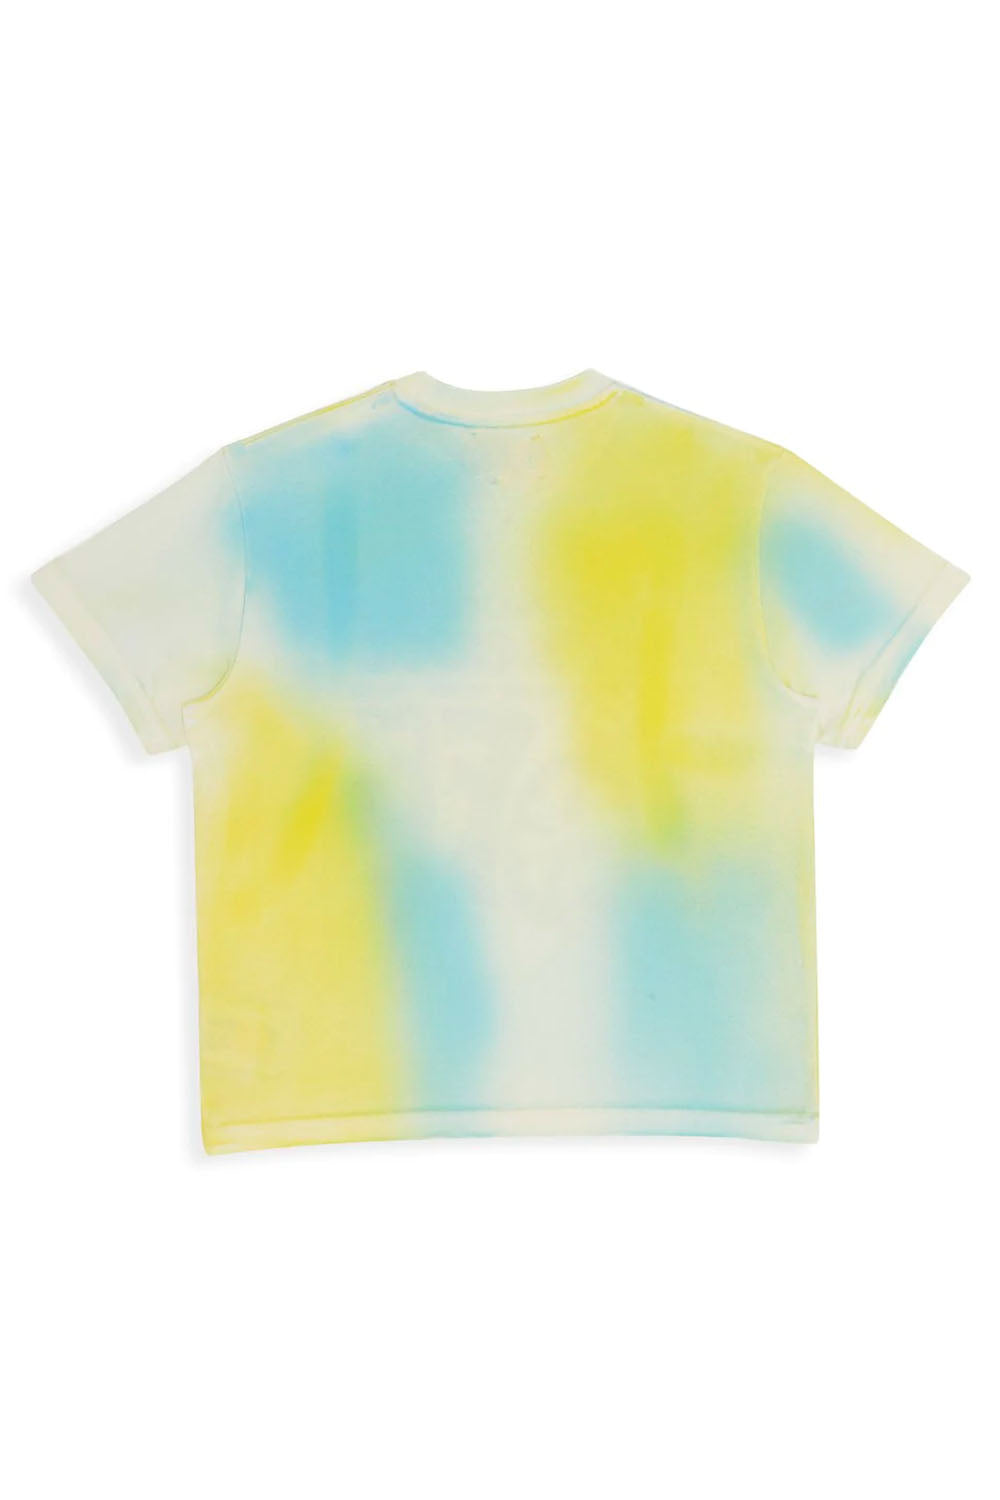 Colour Spot T-Shirt for Boys - Maison7